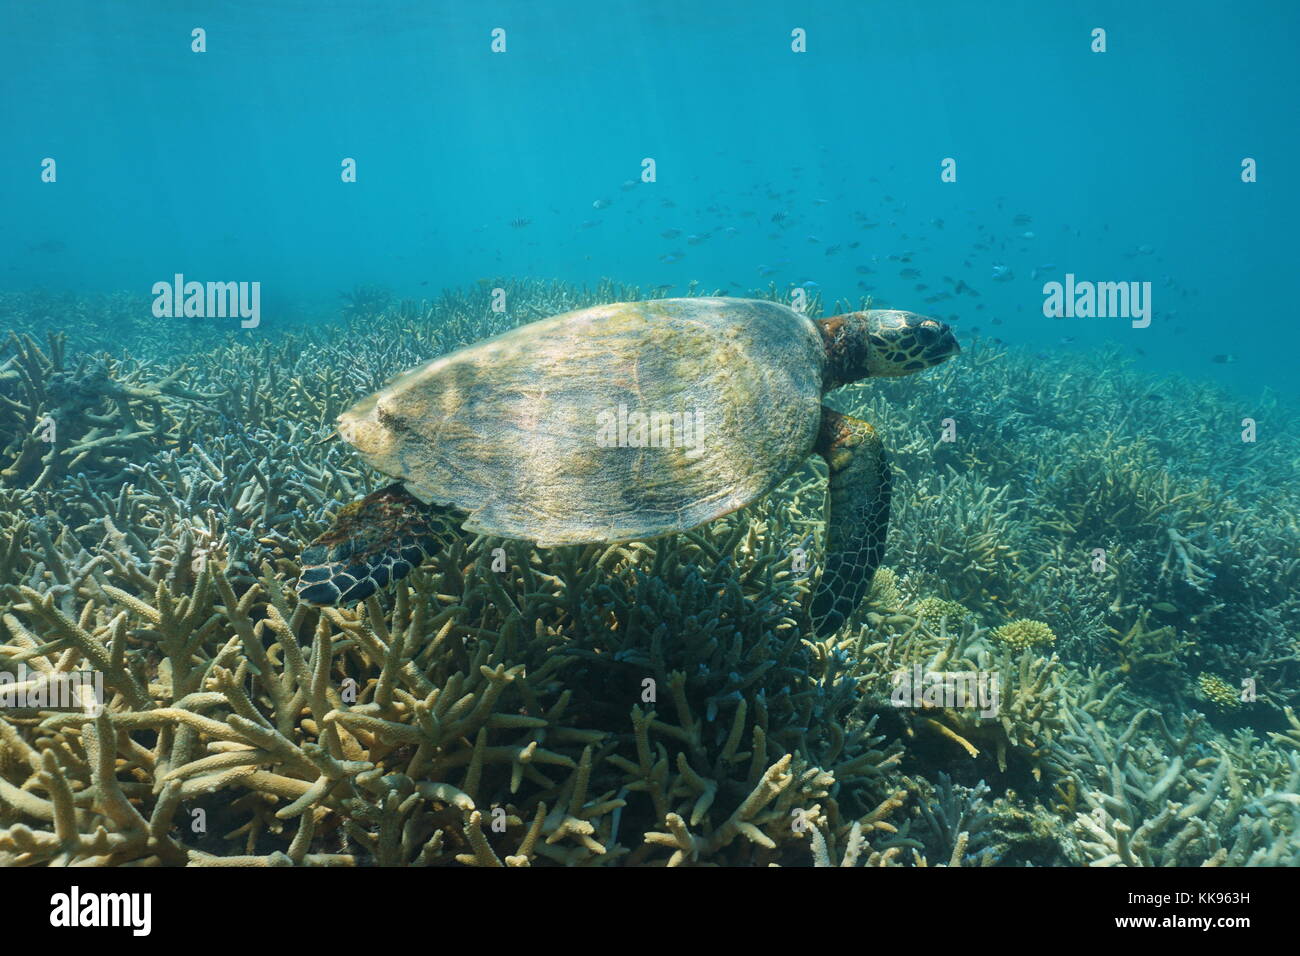 Un submarino de tortugas carey Eretmochelys imbricata, sobre un arrecife de coral, Nueva Caledonia, el sur del océano pacífico, Oceanía Foto de stock